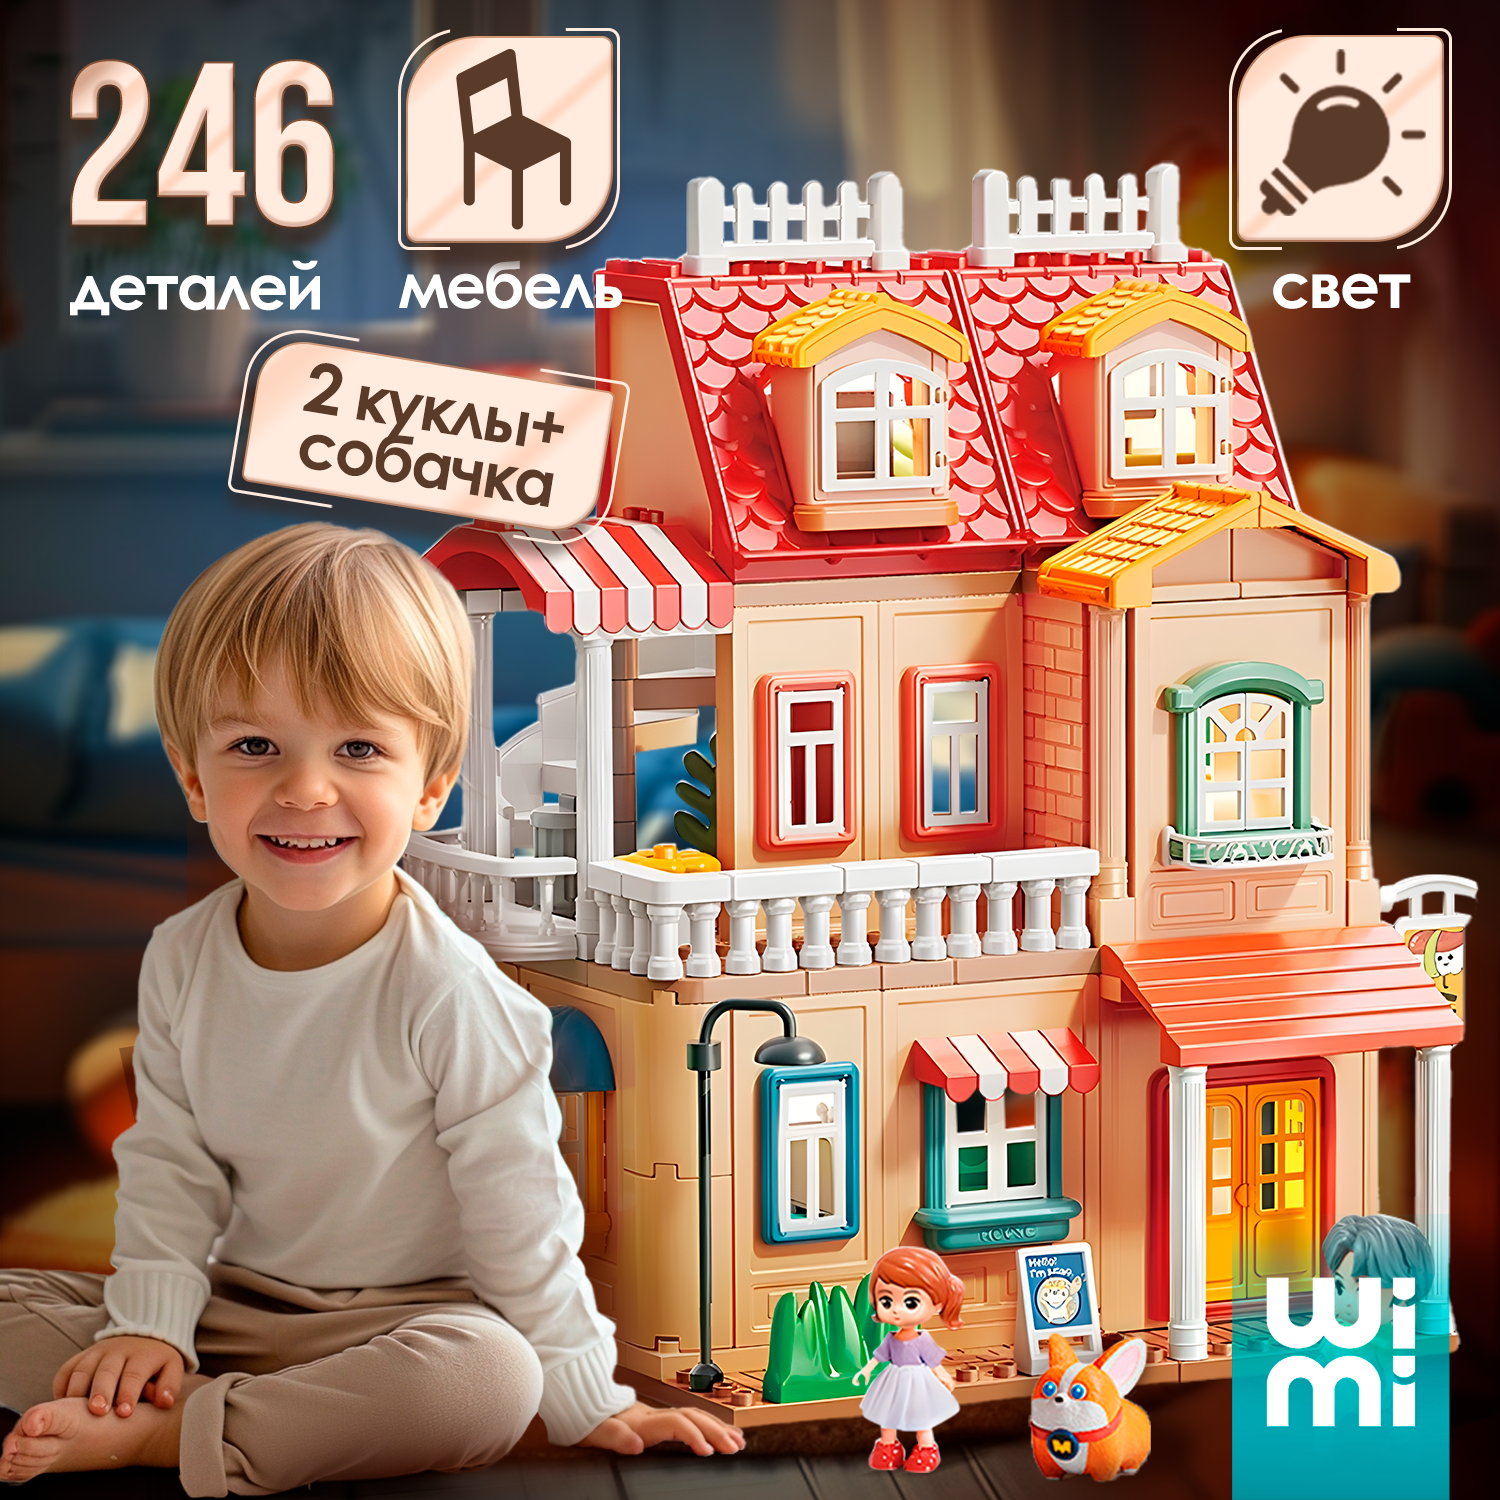 Кукольный домик с мебелью, куклами и подсветкой WiMi, большой игровой набор, 246 деталей